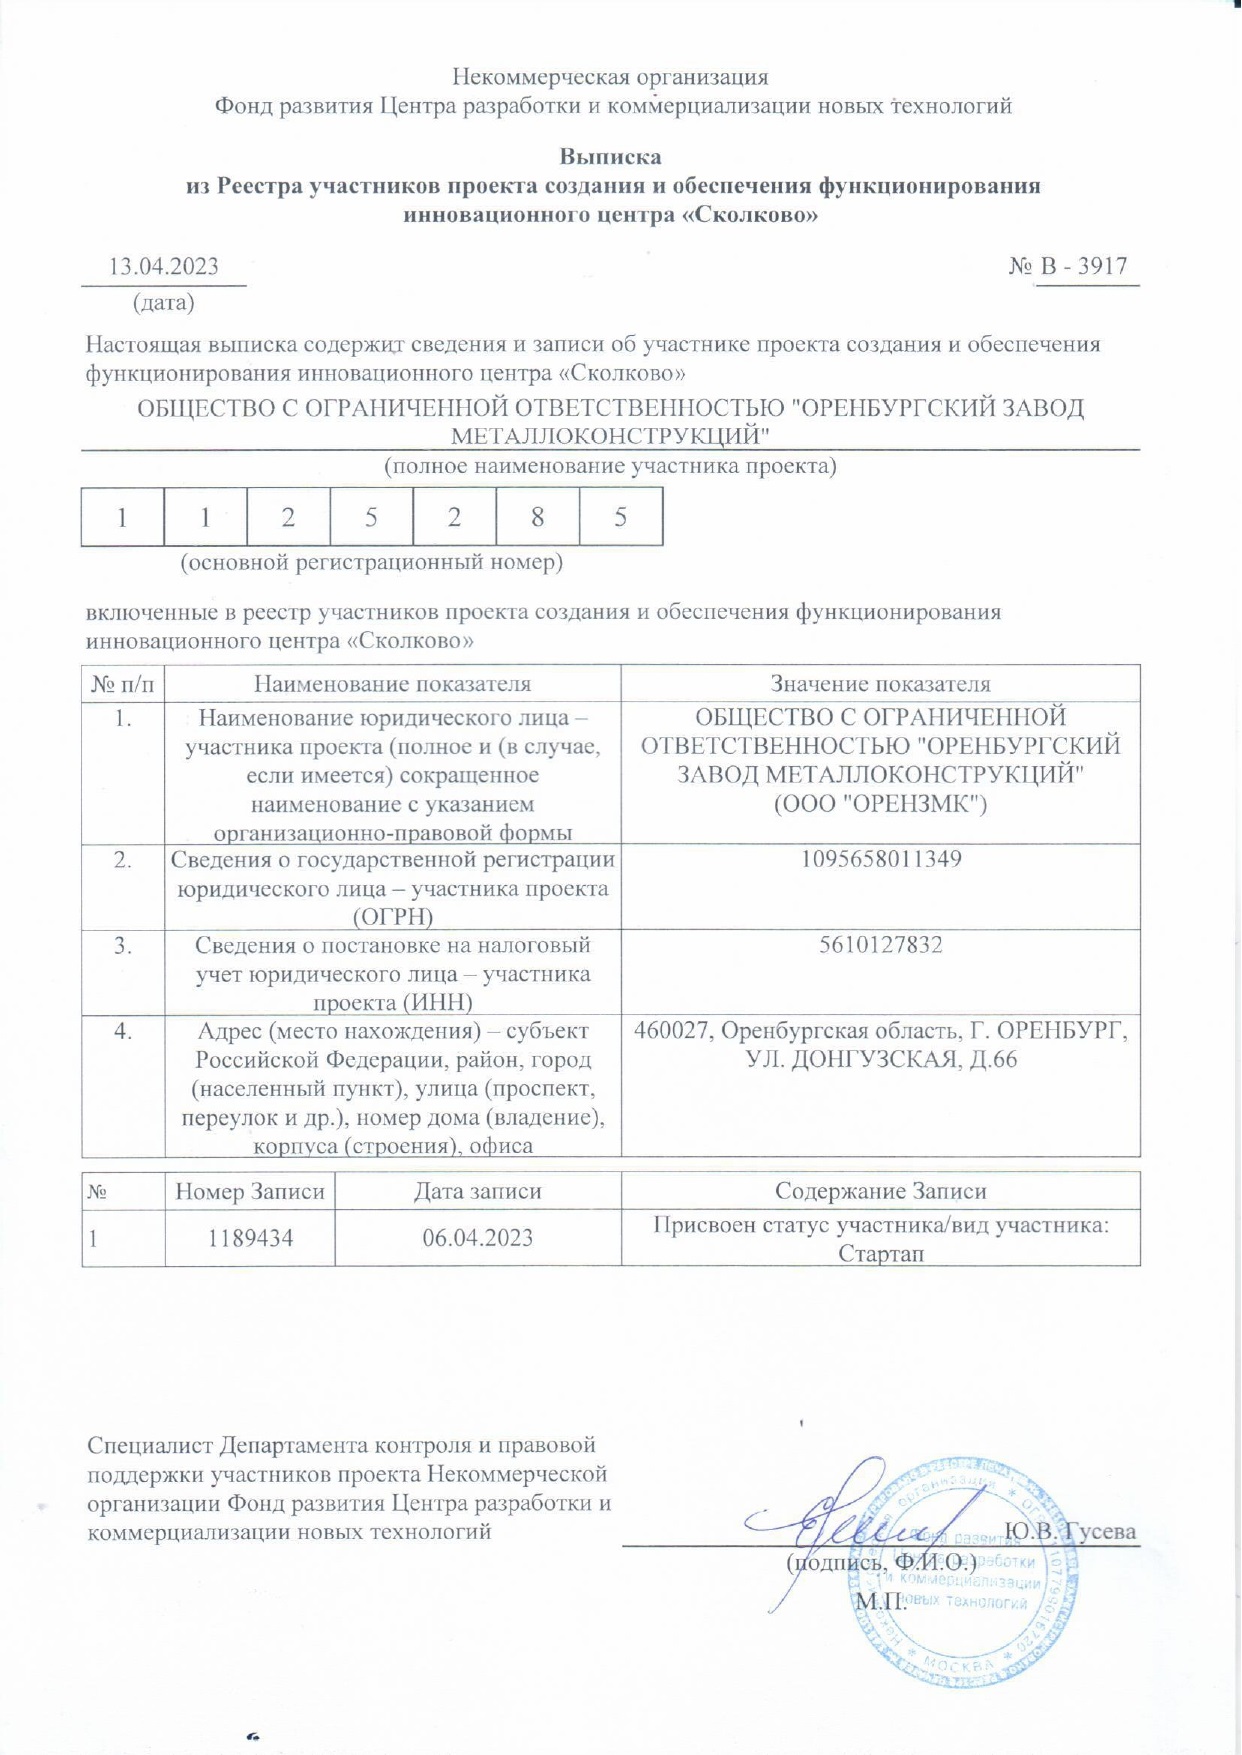 Оренбургский завод металлоконструкций — участник инновационного центра «Сколково»